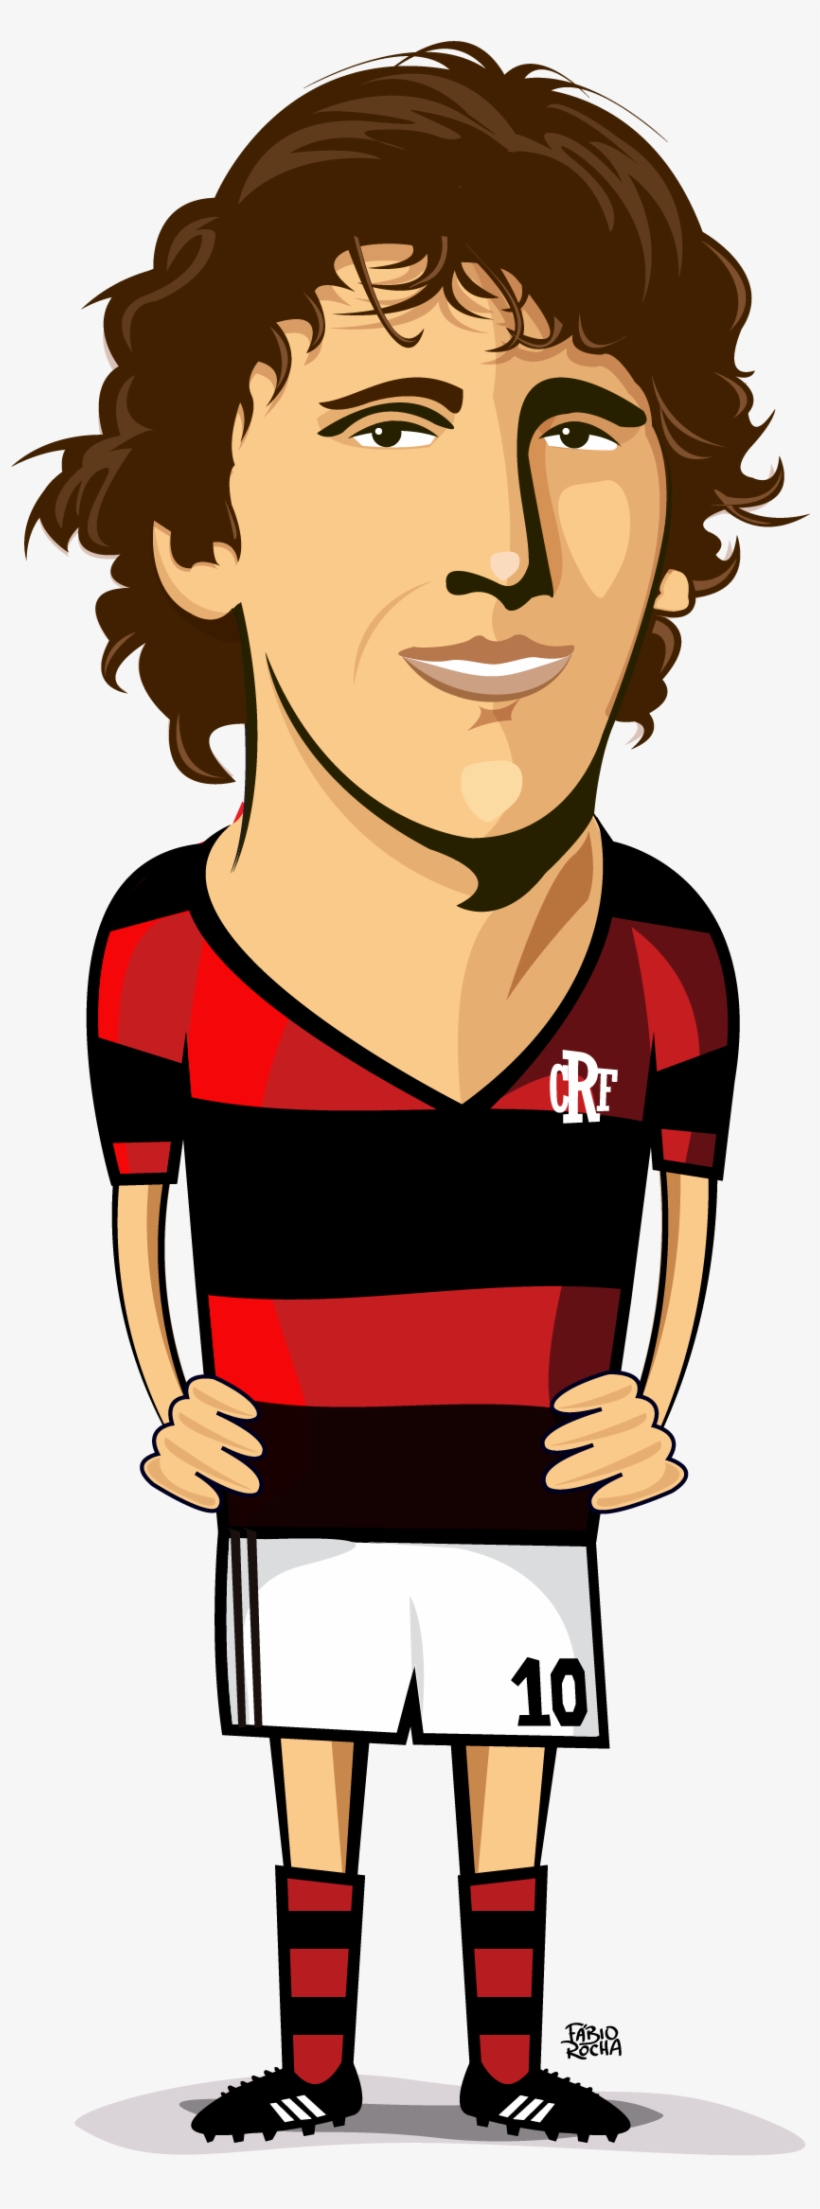 Homenagem A Zico, Eterno Camisa 10 Do Flamengo - Cartoon, transparent png #3762689